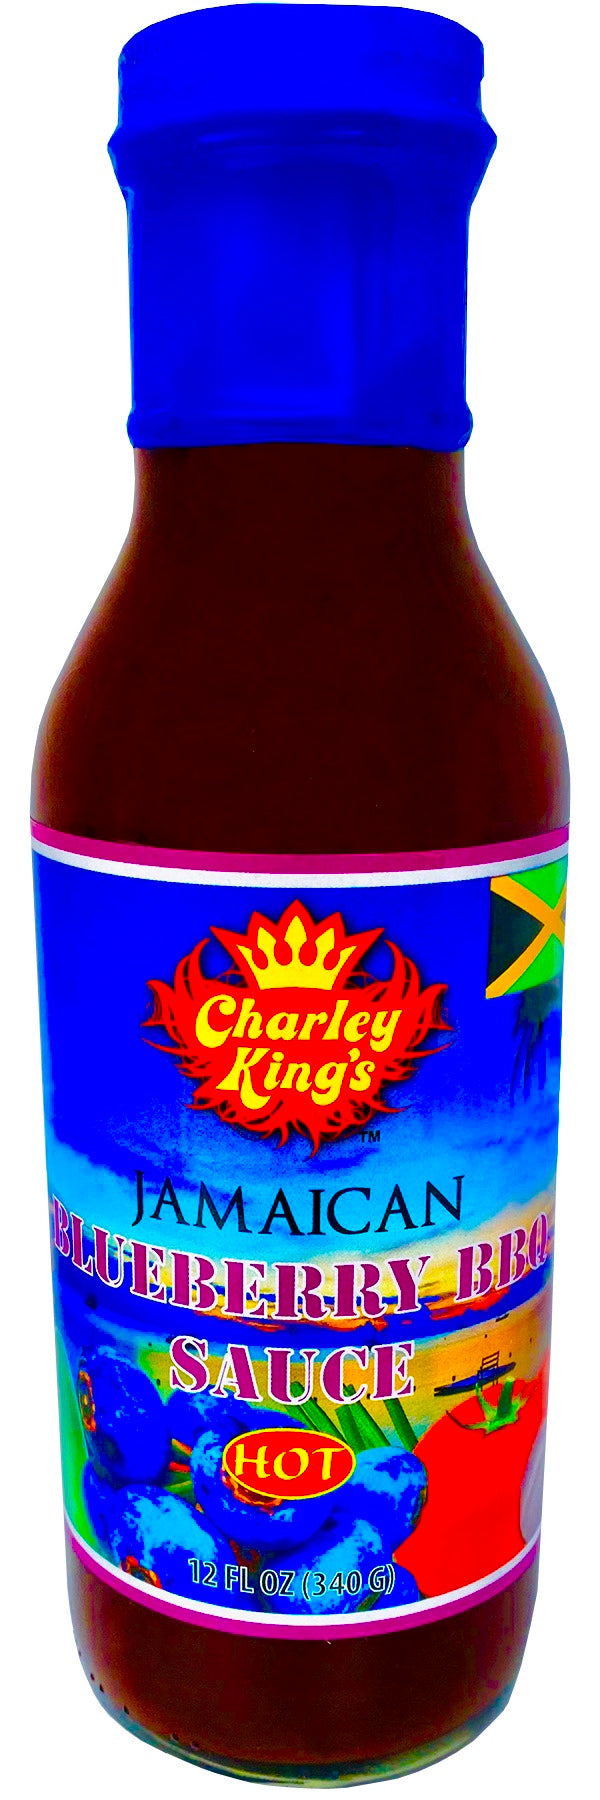 Jamaican Blueberry BBQ Sauce Hot